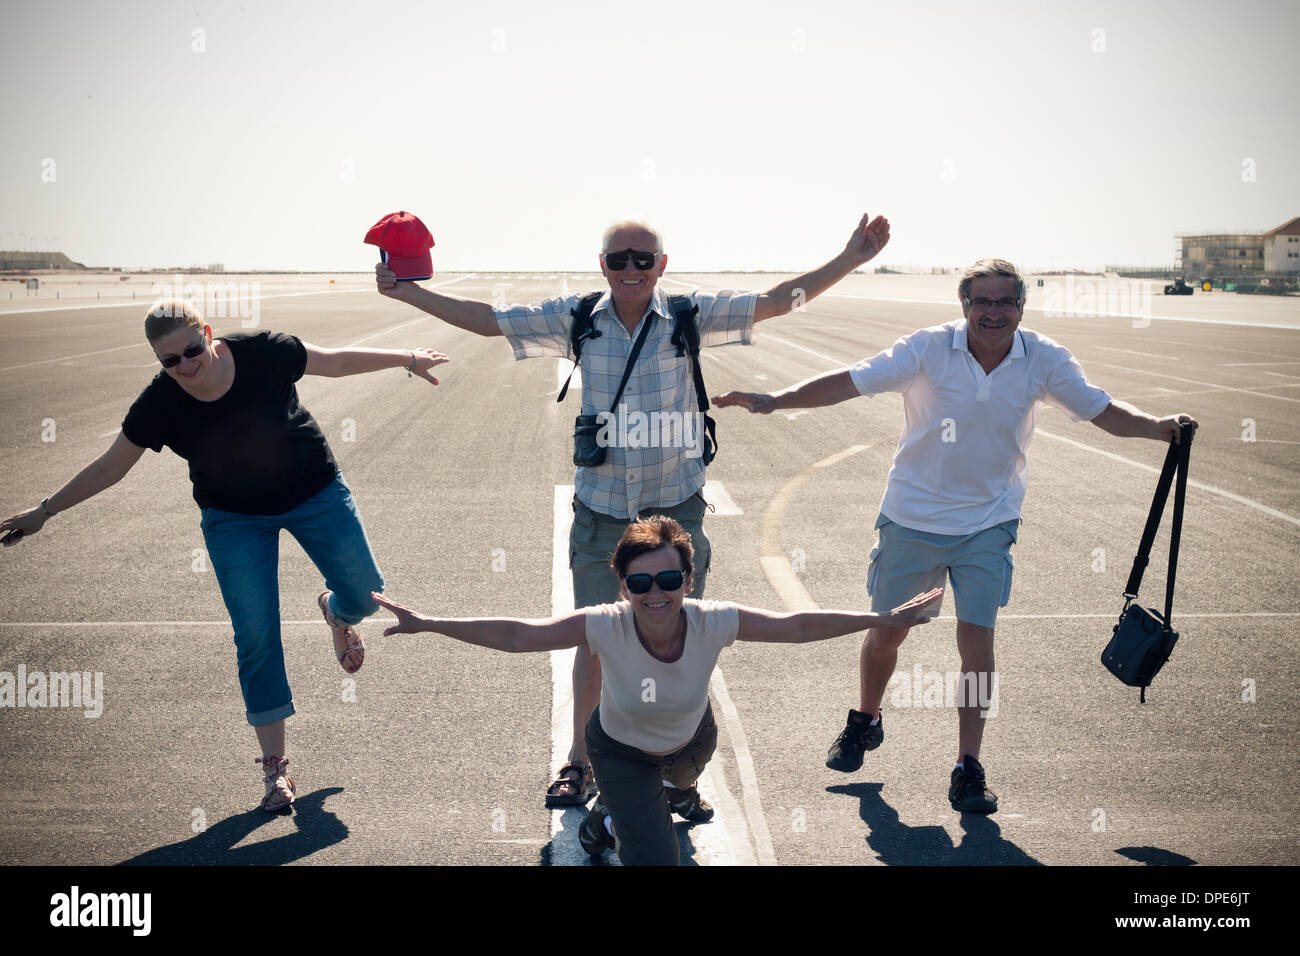 Divertido grupo de turistas imitando el avión en la pista del aeropuerto. Foto de stock